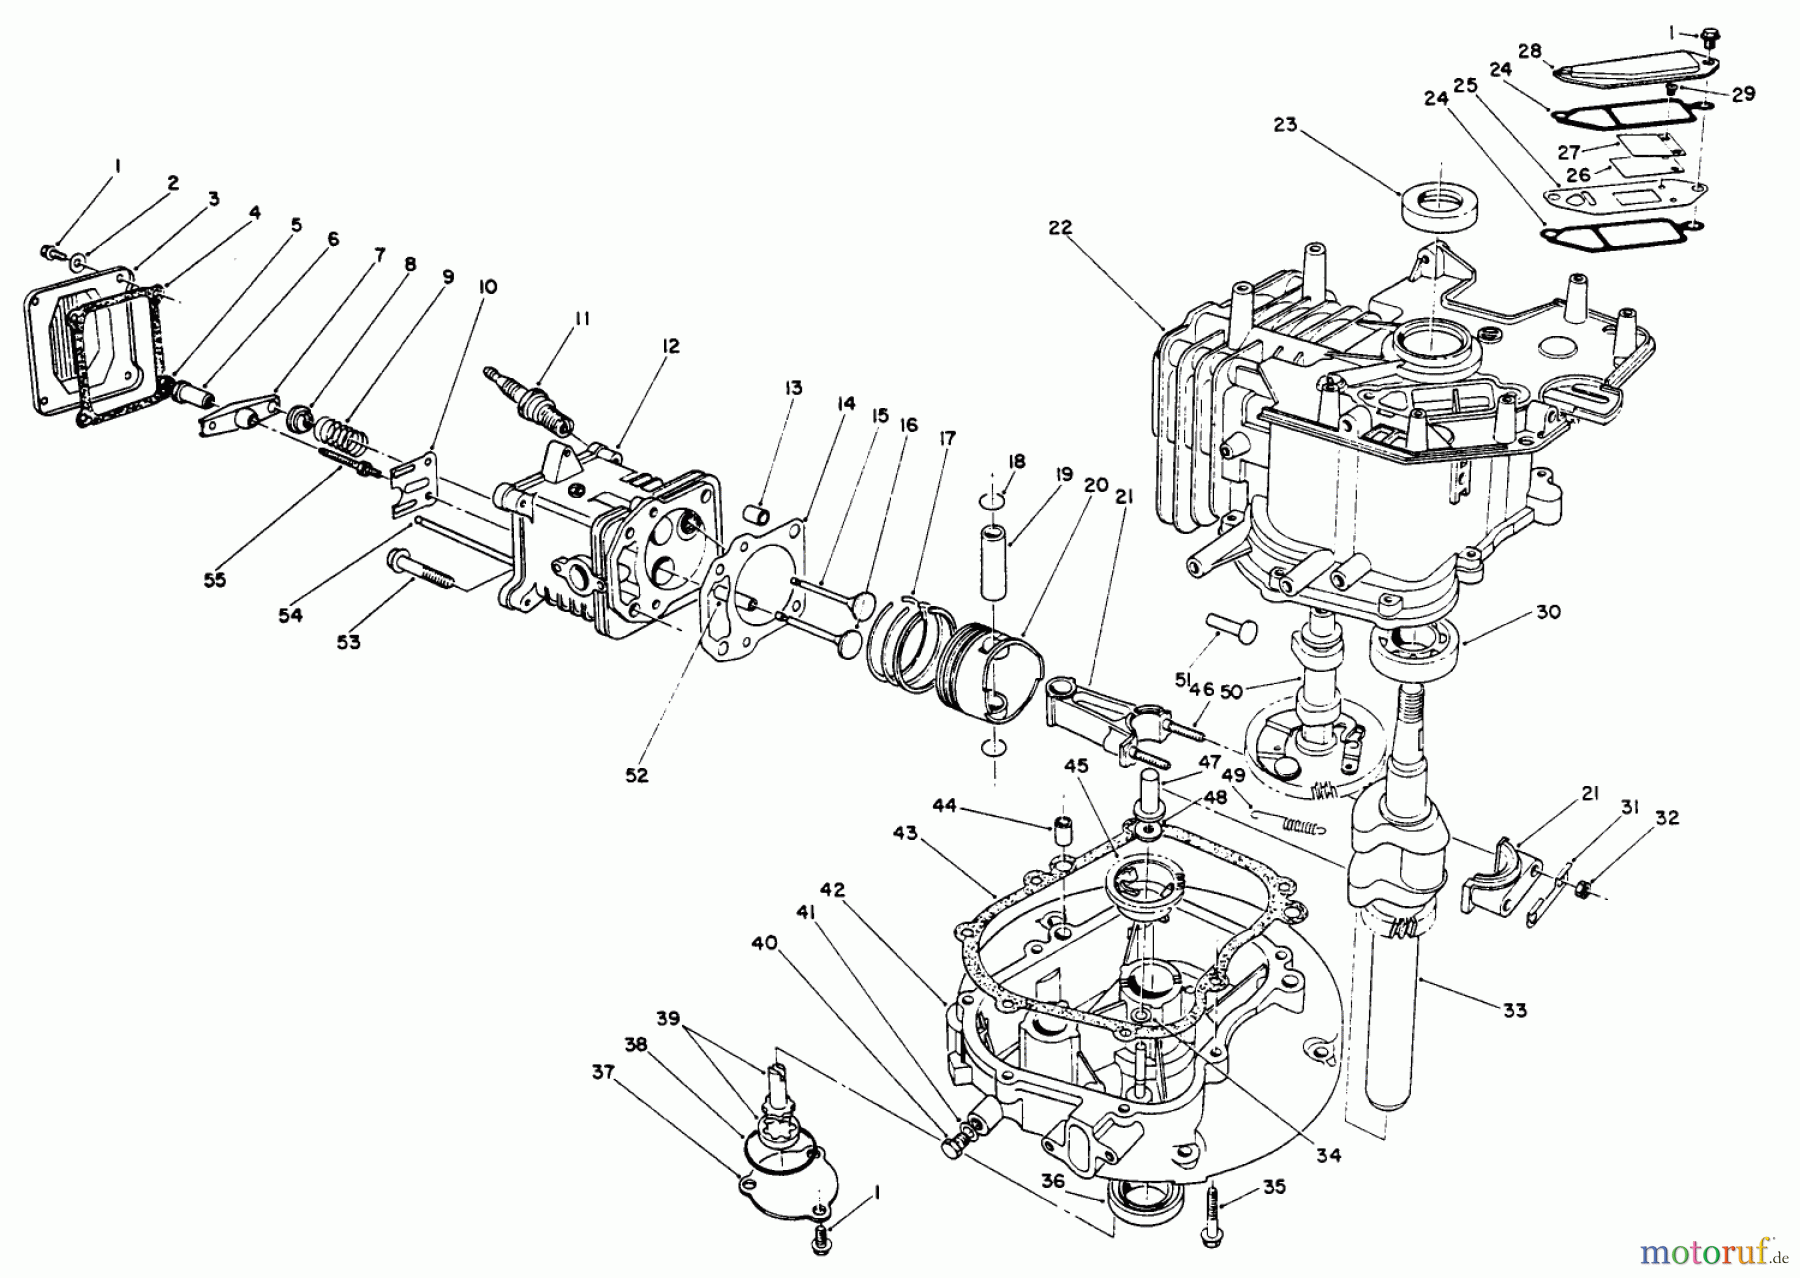  Toro Neu Mowers, Walk-Behind Seite 2 26625B - Toro Lawnmower, 1991 (1000001-1999999) CRANKCASE ASSEMBLY (ENGINE NO. VML0-5)